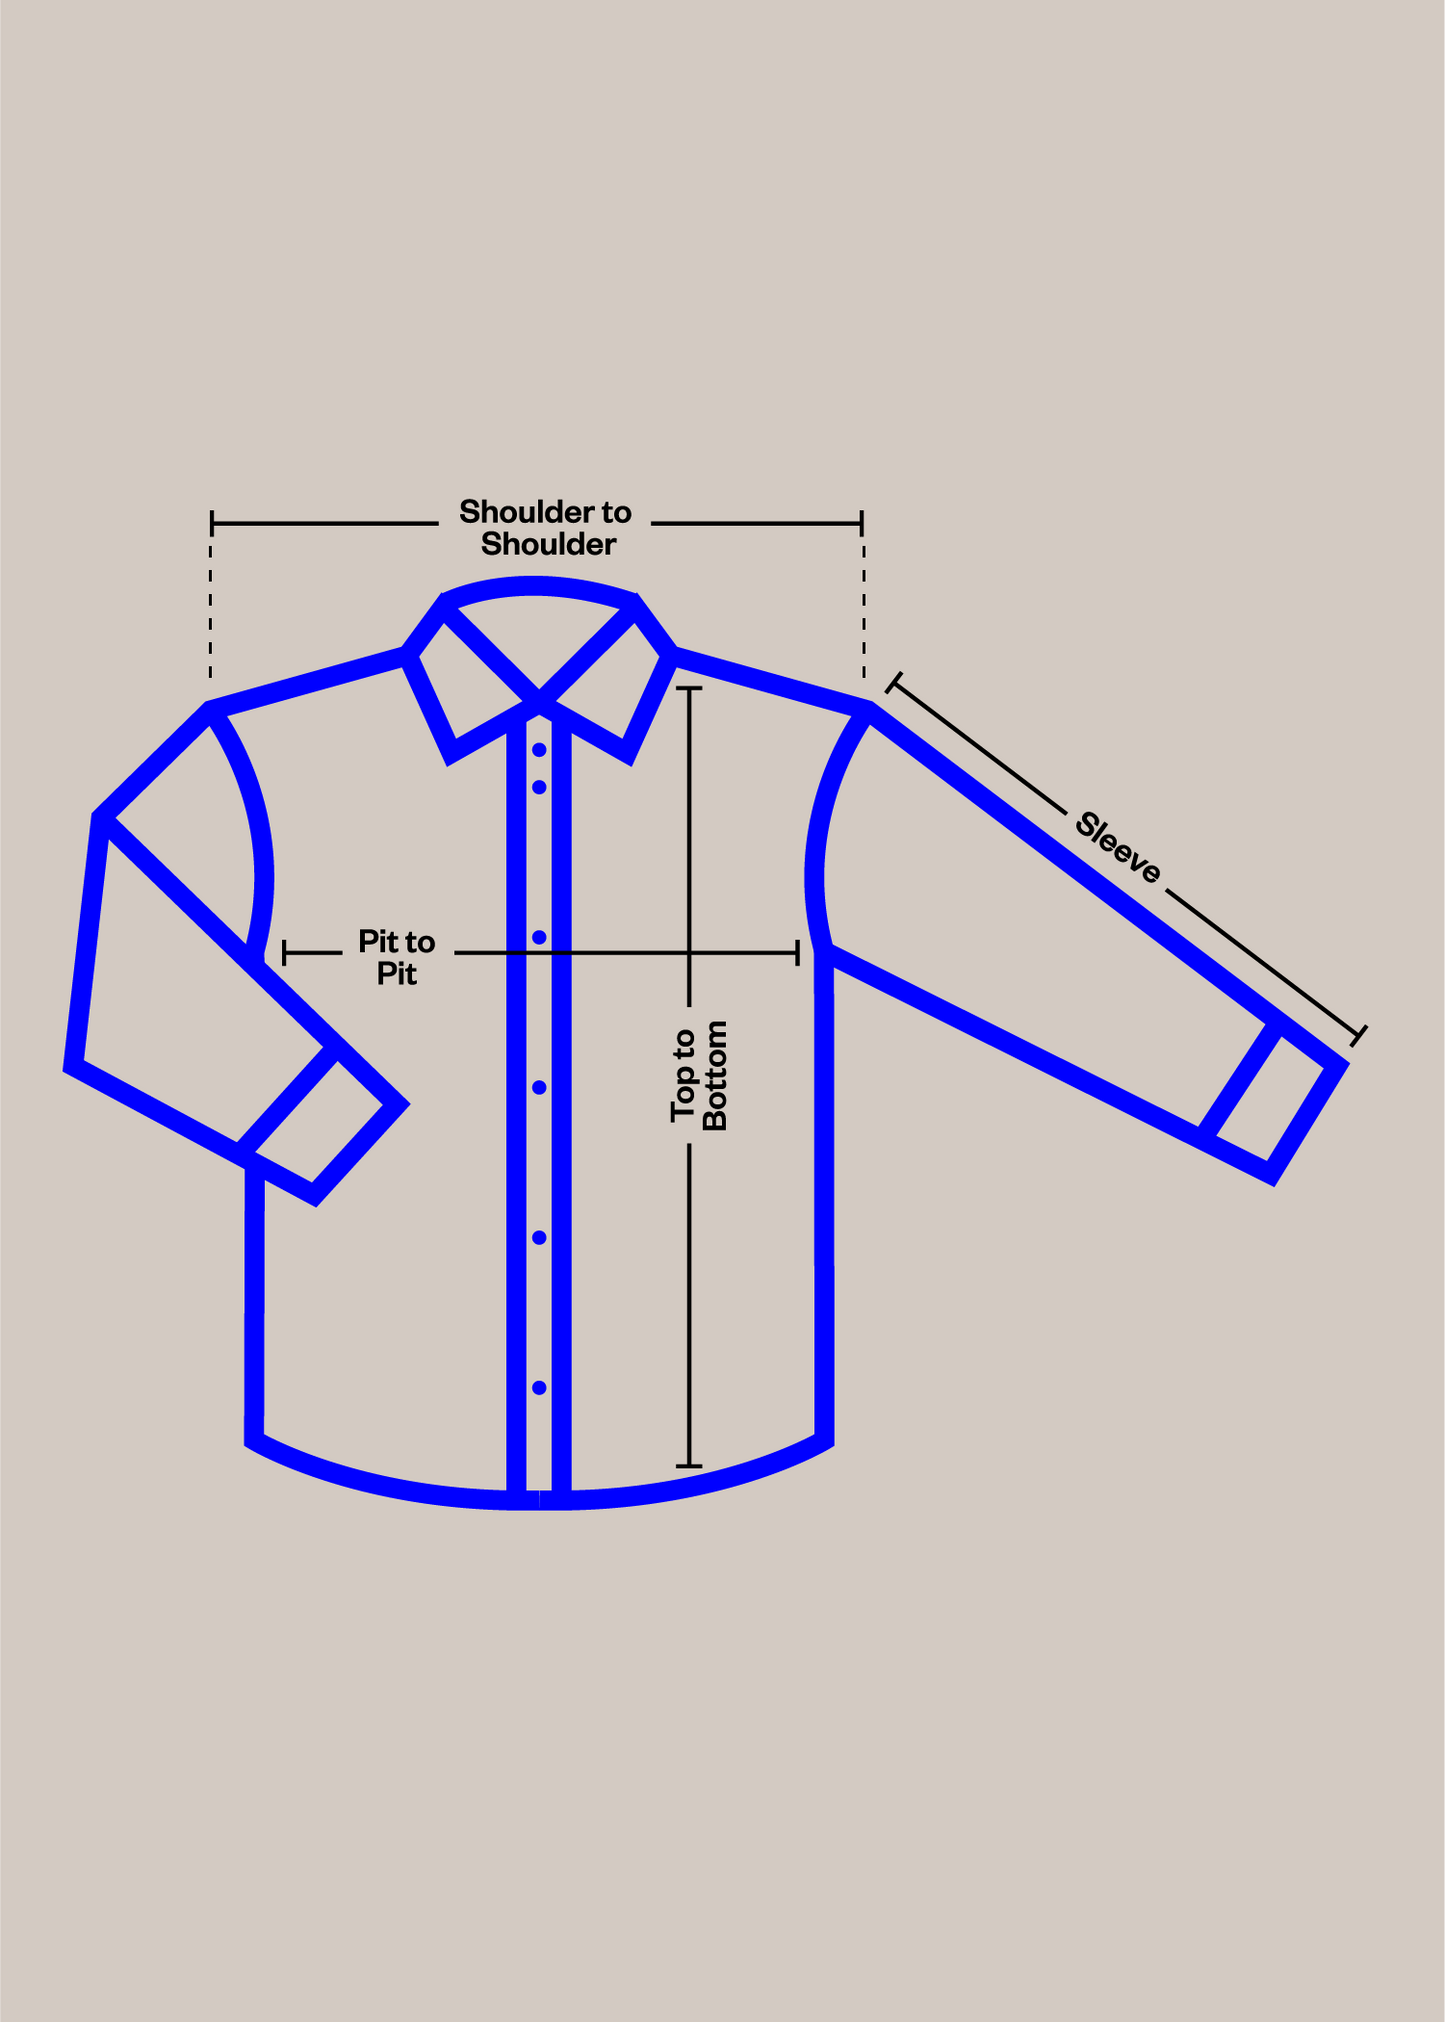 1970s Fringe Suede Vest Size XS/S